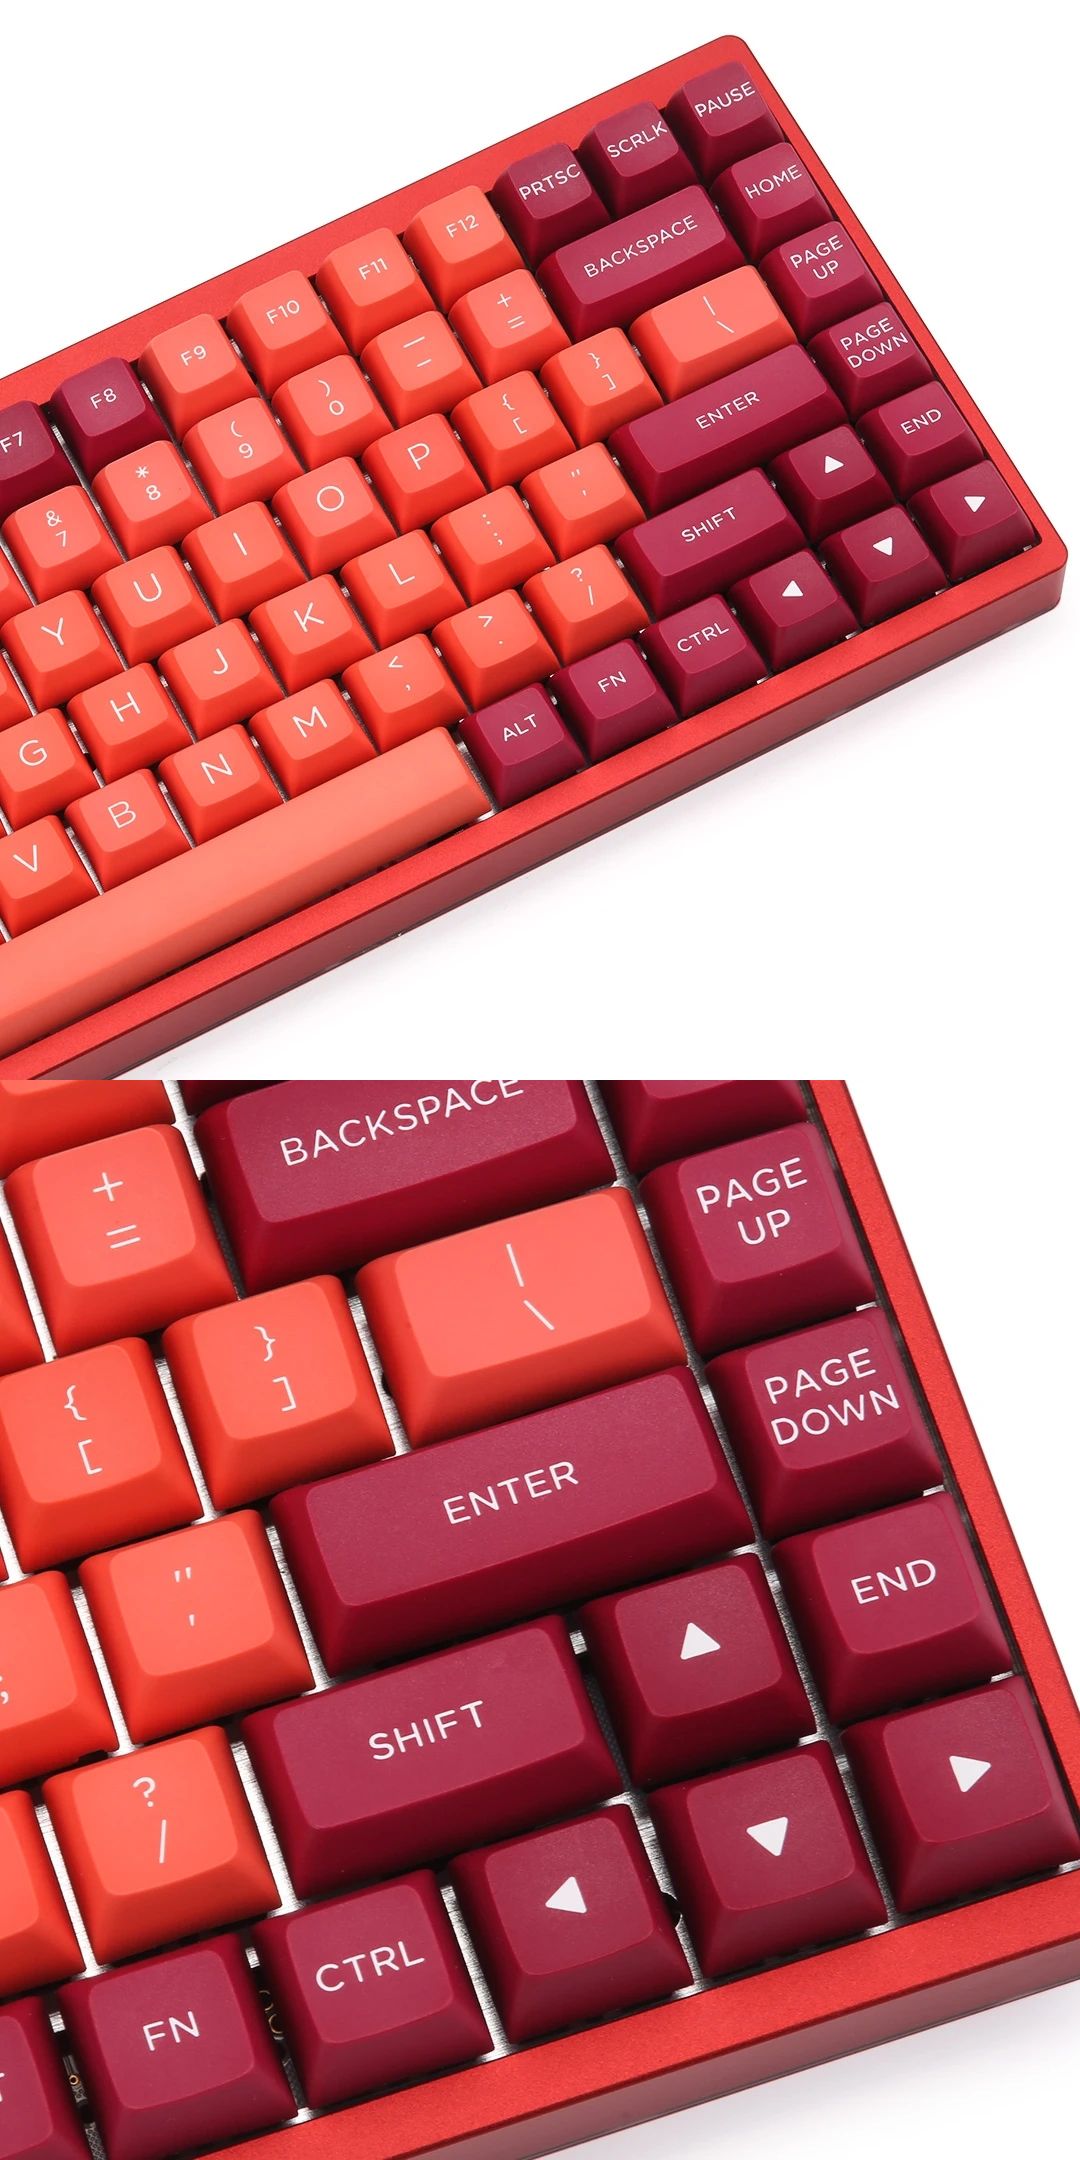 KBDfans-Lava-Orange-Keycap-Set-OSA-Profile-PBT-Doubleshot-154-Keys-Mechanical-Keyboard-Keycaps-1616253